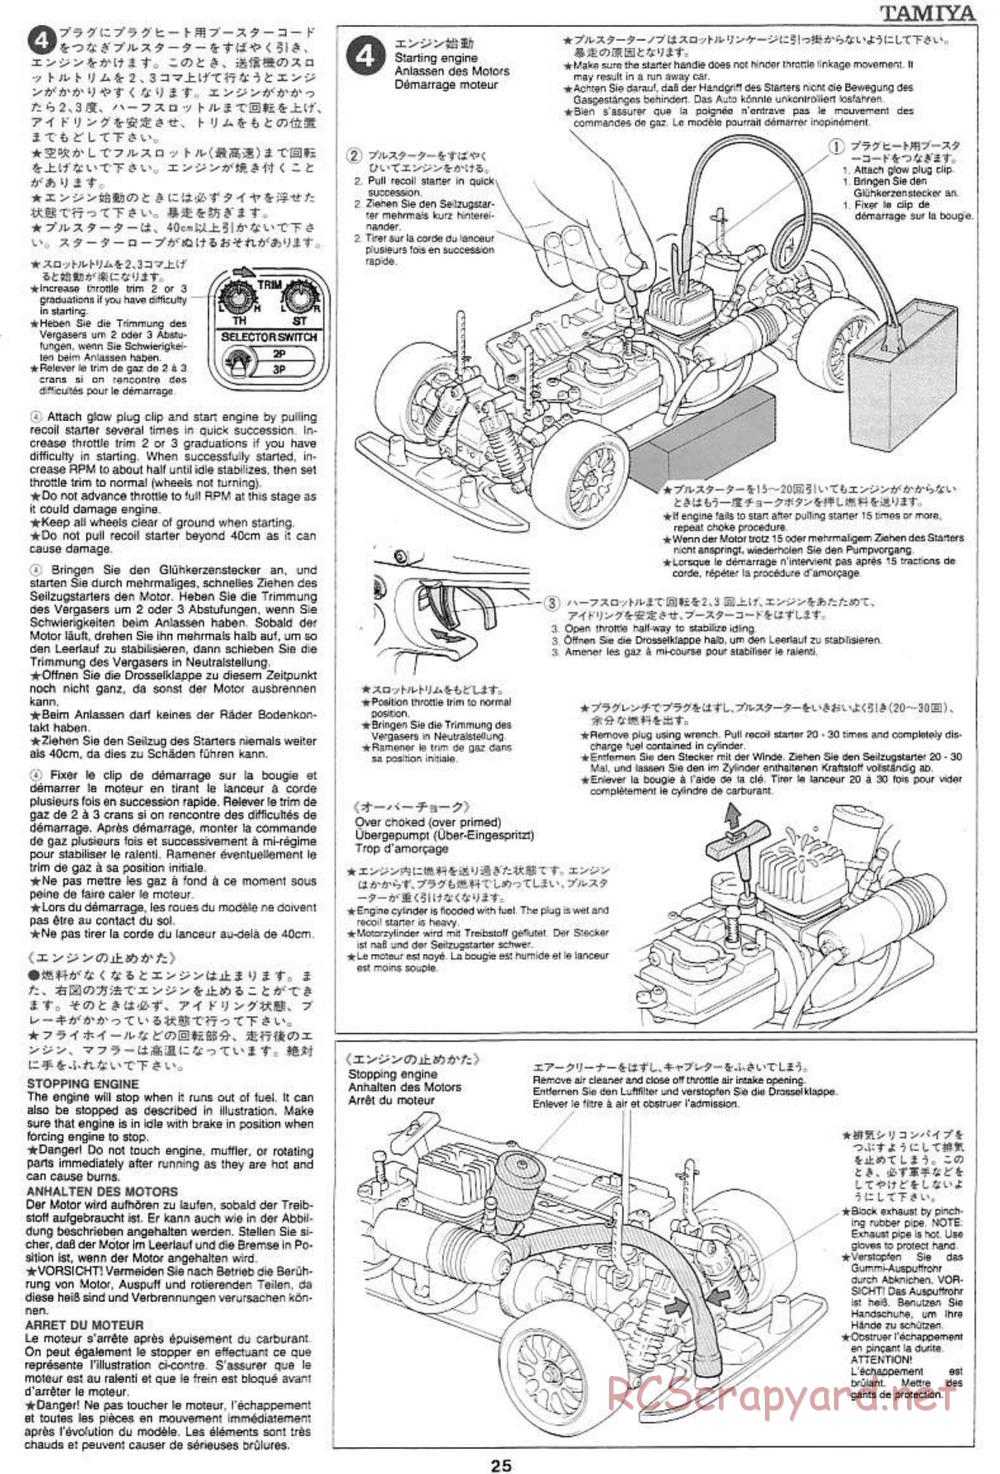 Tamiya - Mercedes CLK GTR Team Sportswear - TG10 Mk.1 Chassis - Manual - Page 25